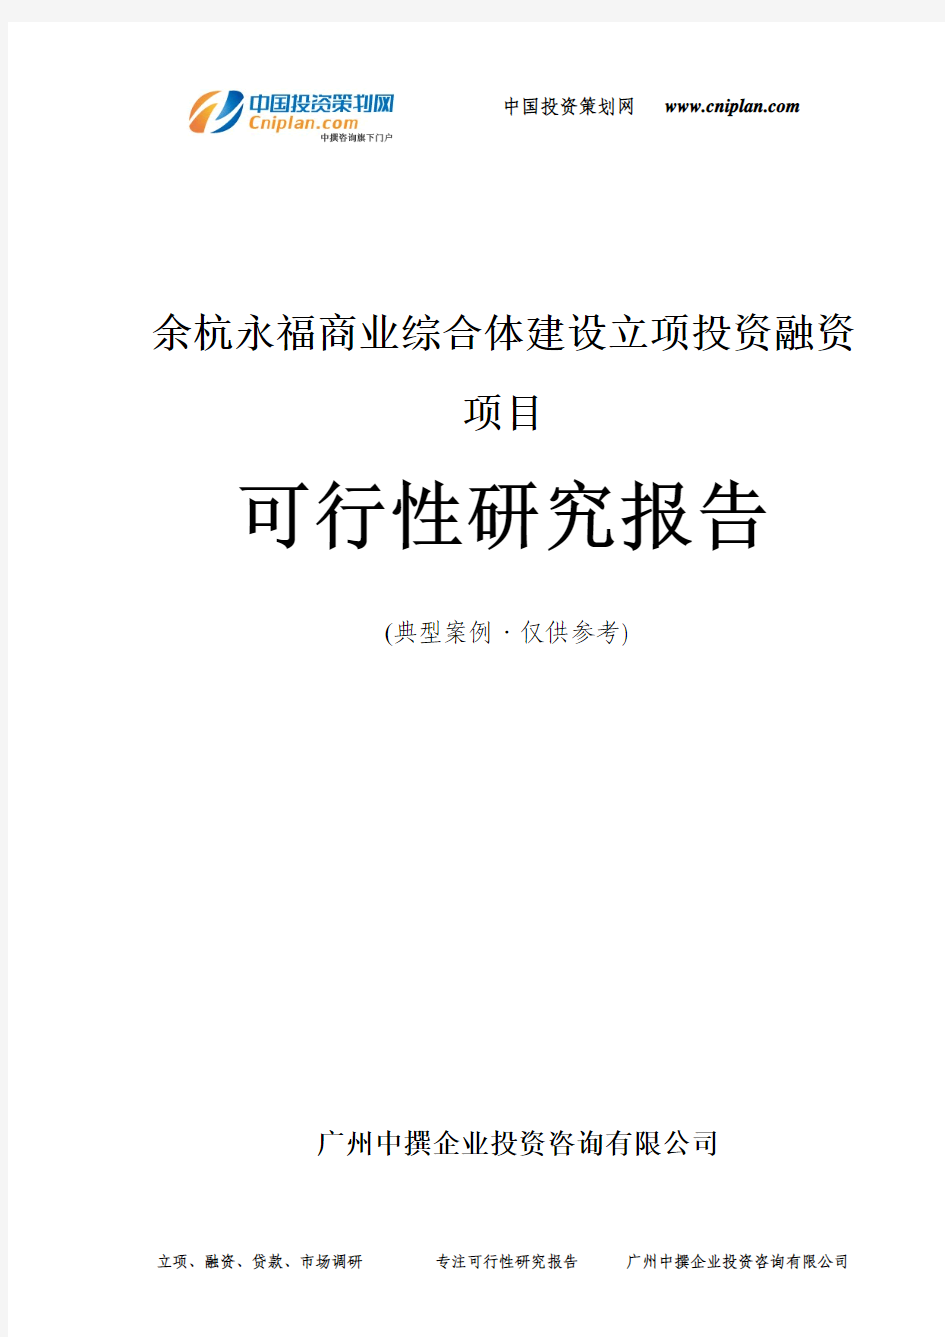 余杭永福商业综合体建设融资投资立项项目可行性研究报告(中撰咨询)